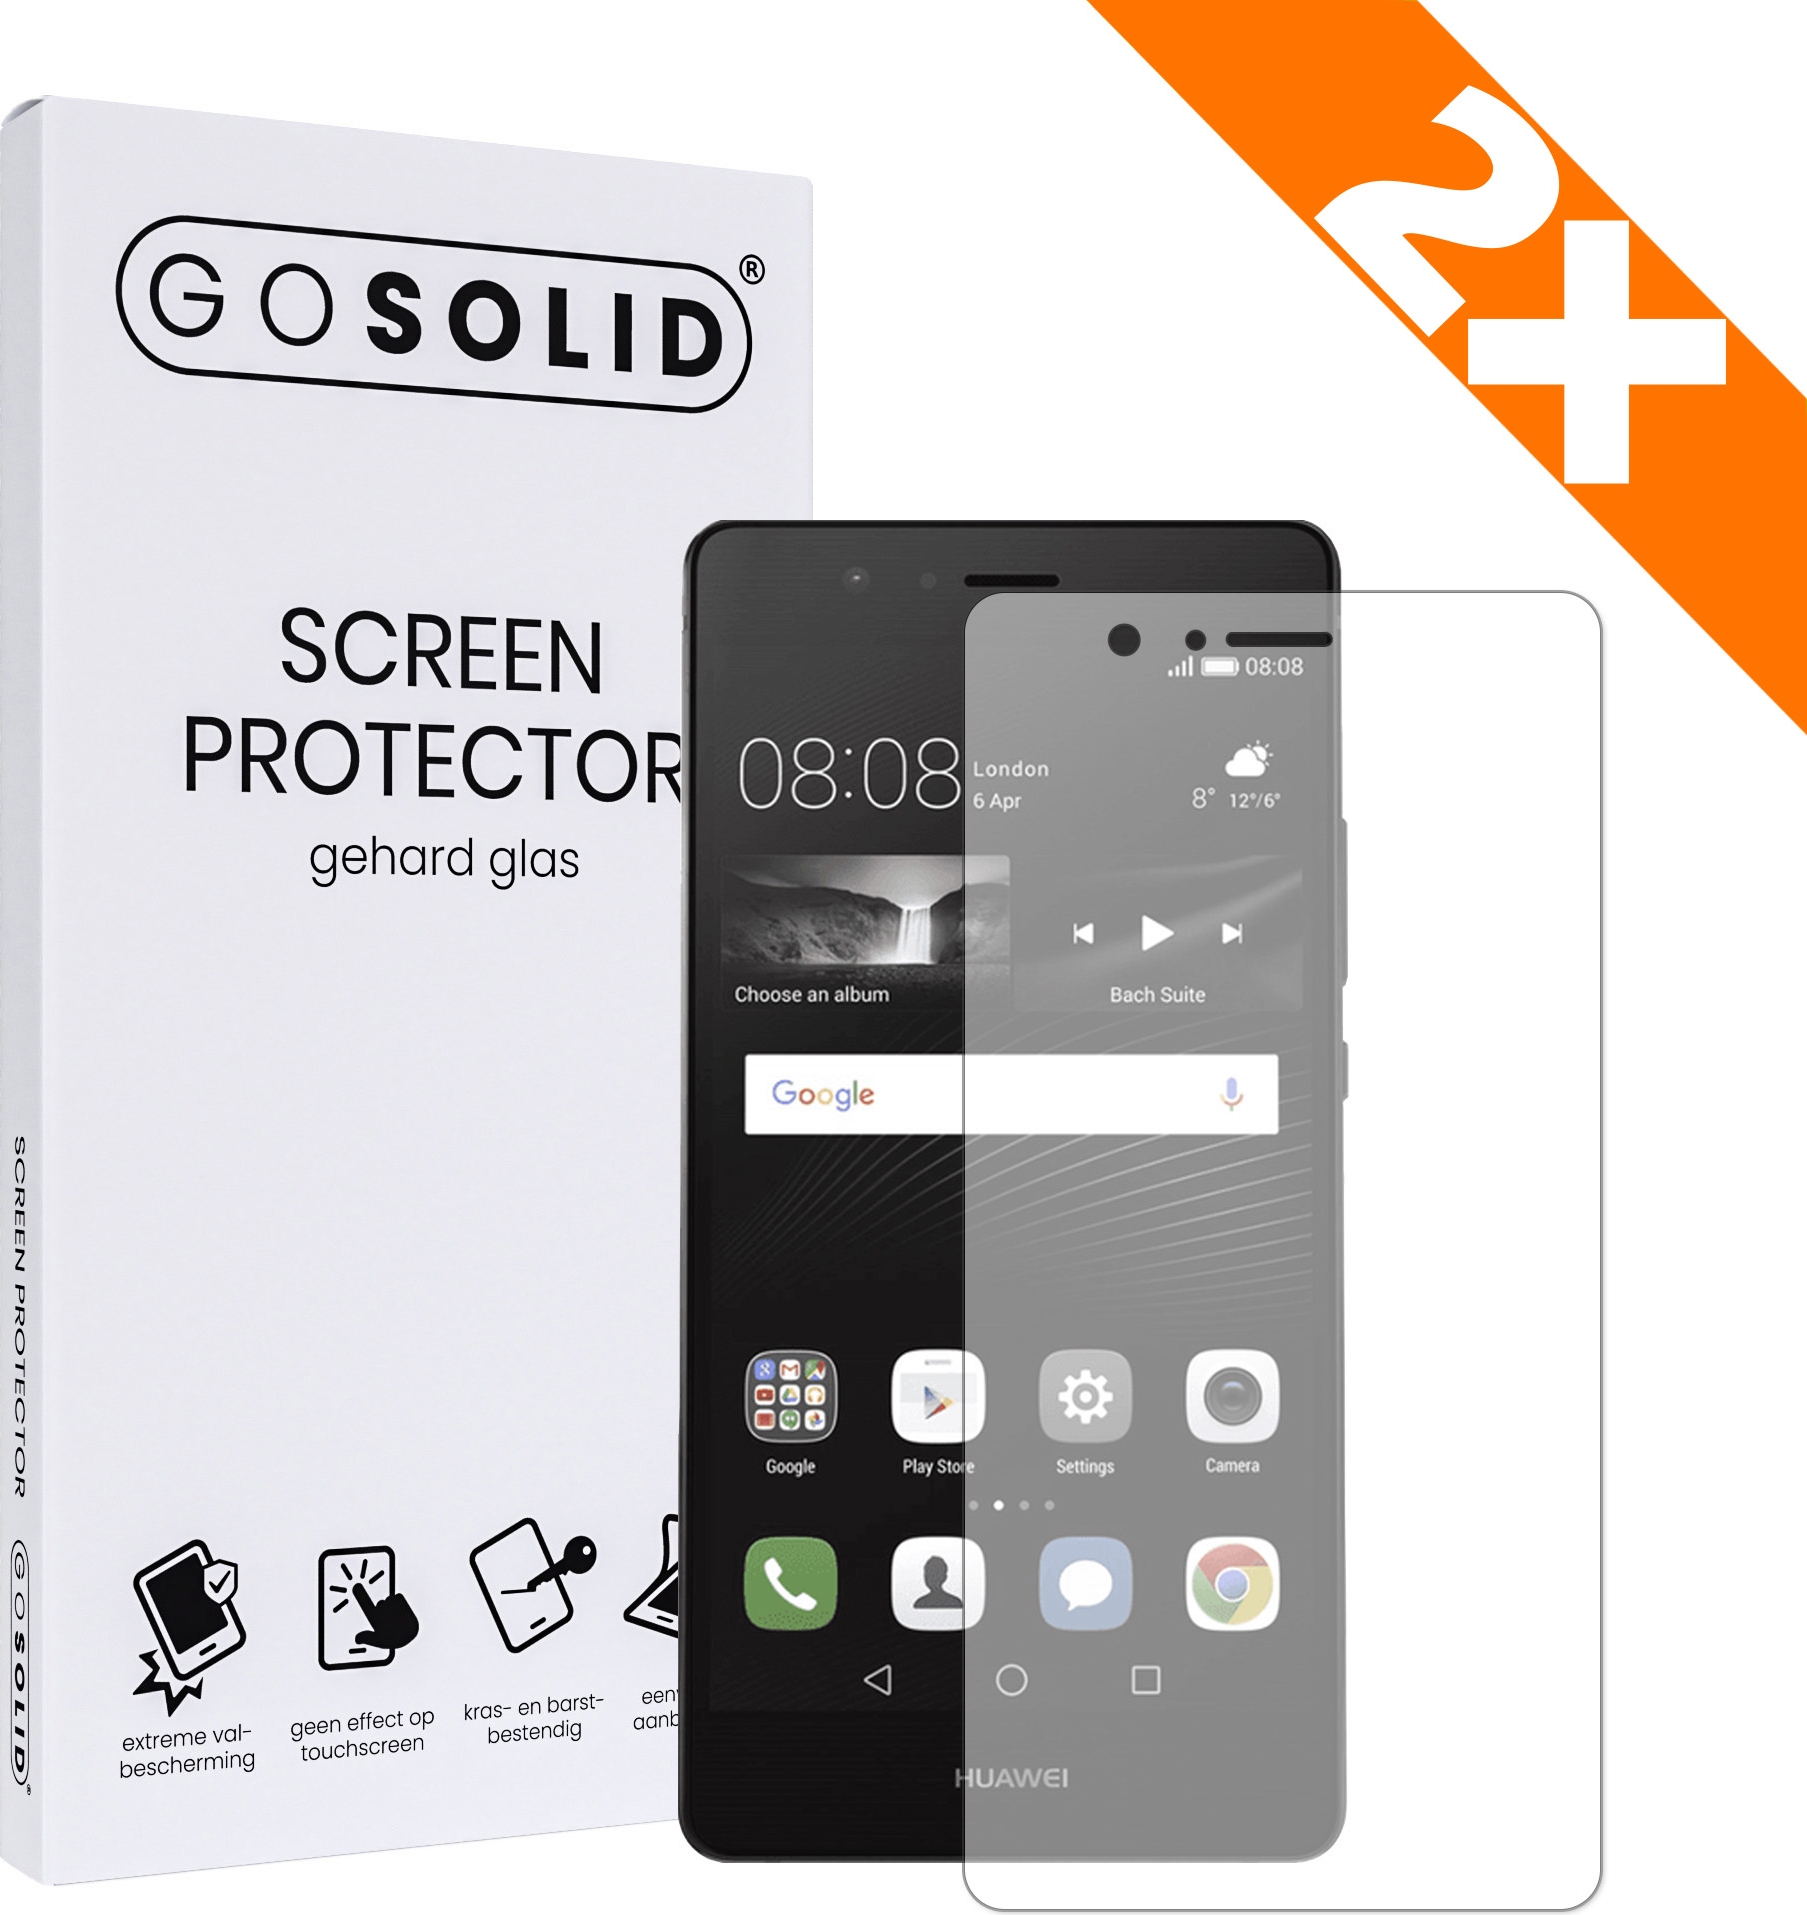 Nominaal Maladroit zwaar ᐅ • GO SOLID! Huawei P8 Lite screenprotector gehard glas - Duopack |  Eenvoudig bij ScreenProtectors.nl